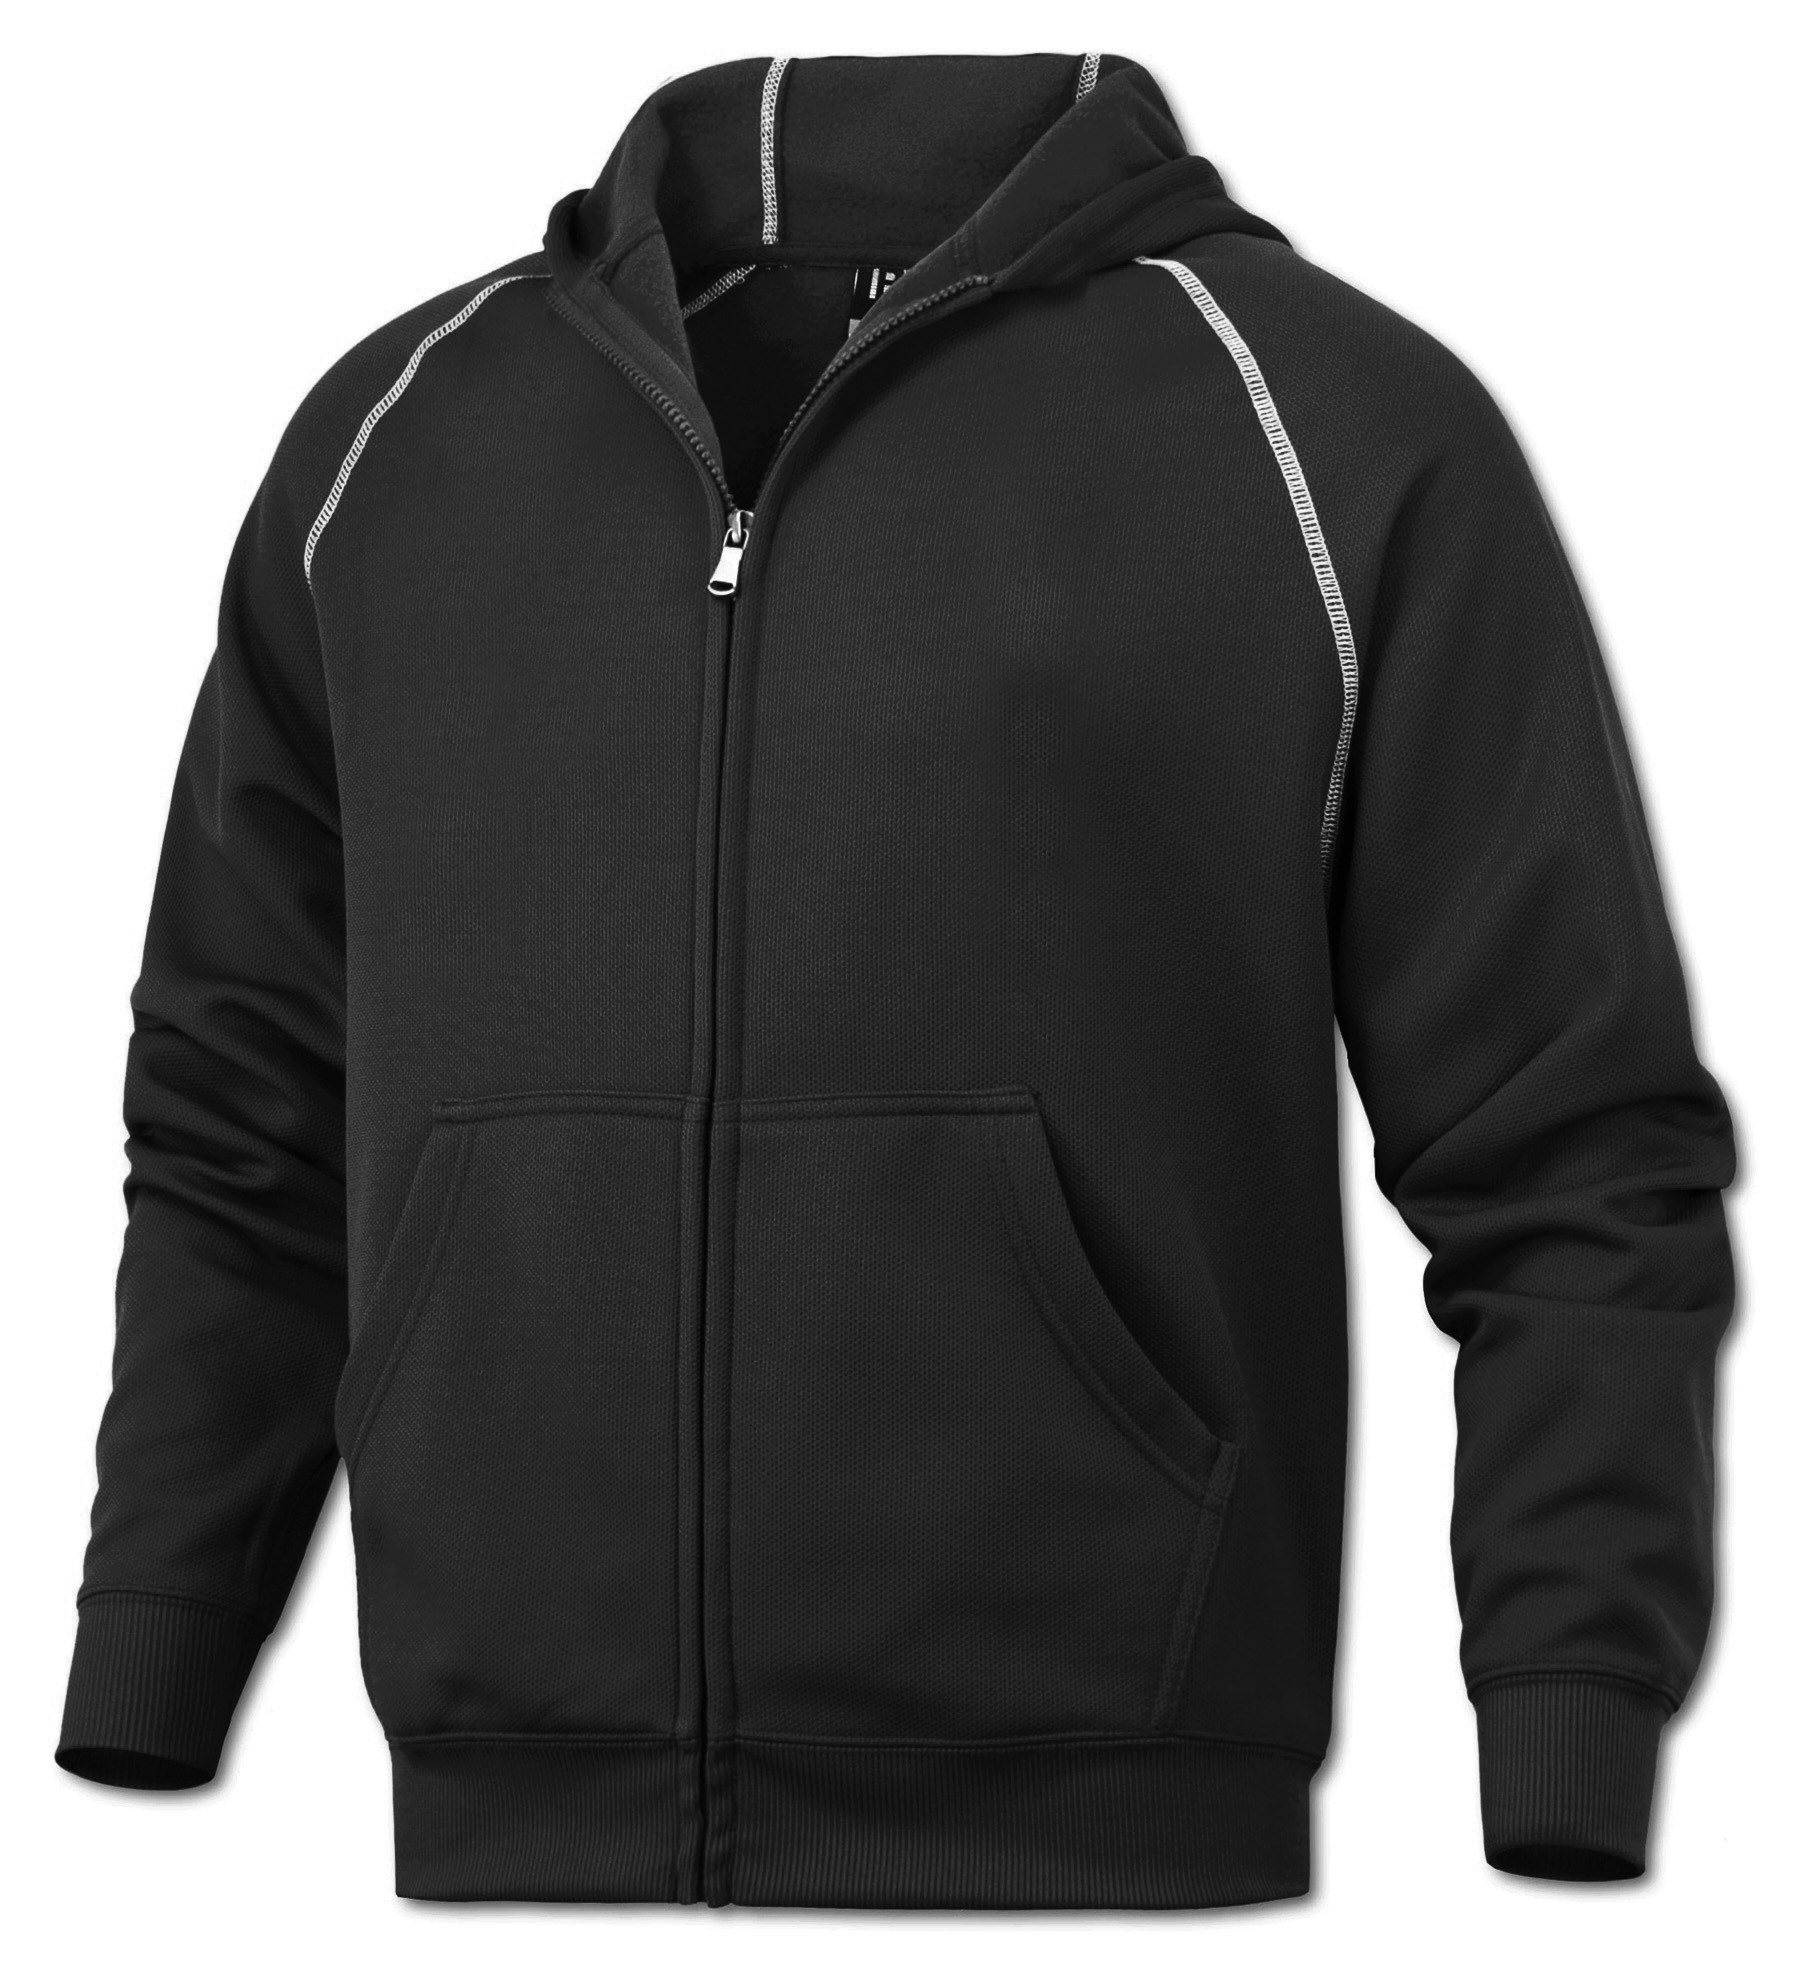 BAW Athletic Wear F250Y - Youth Full-Zip Hooded Sweatshirt